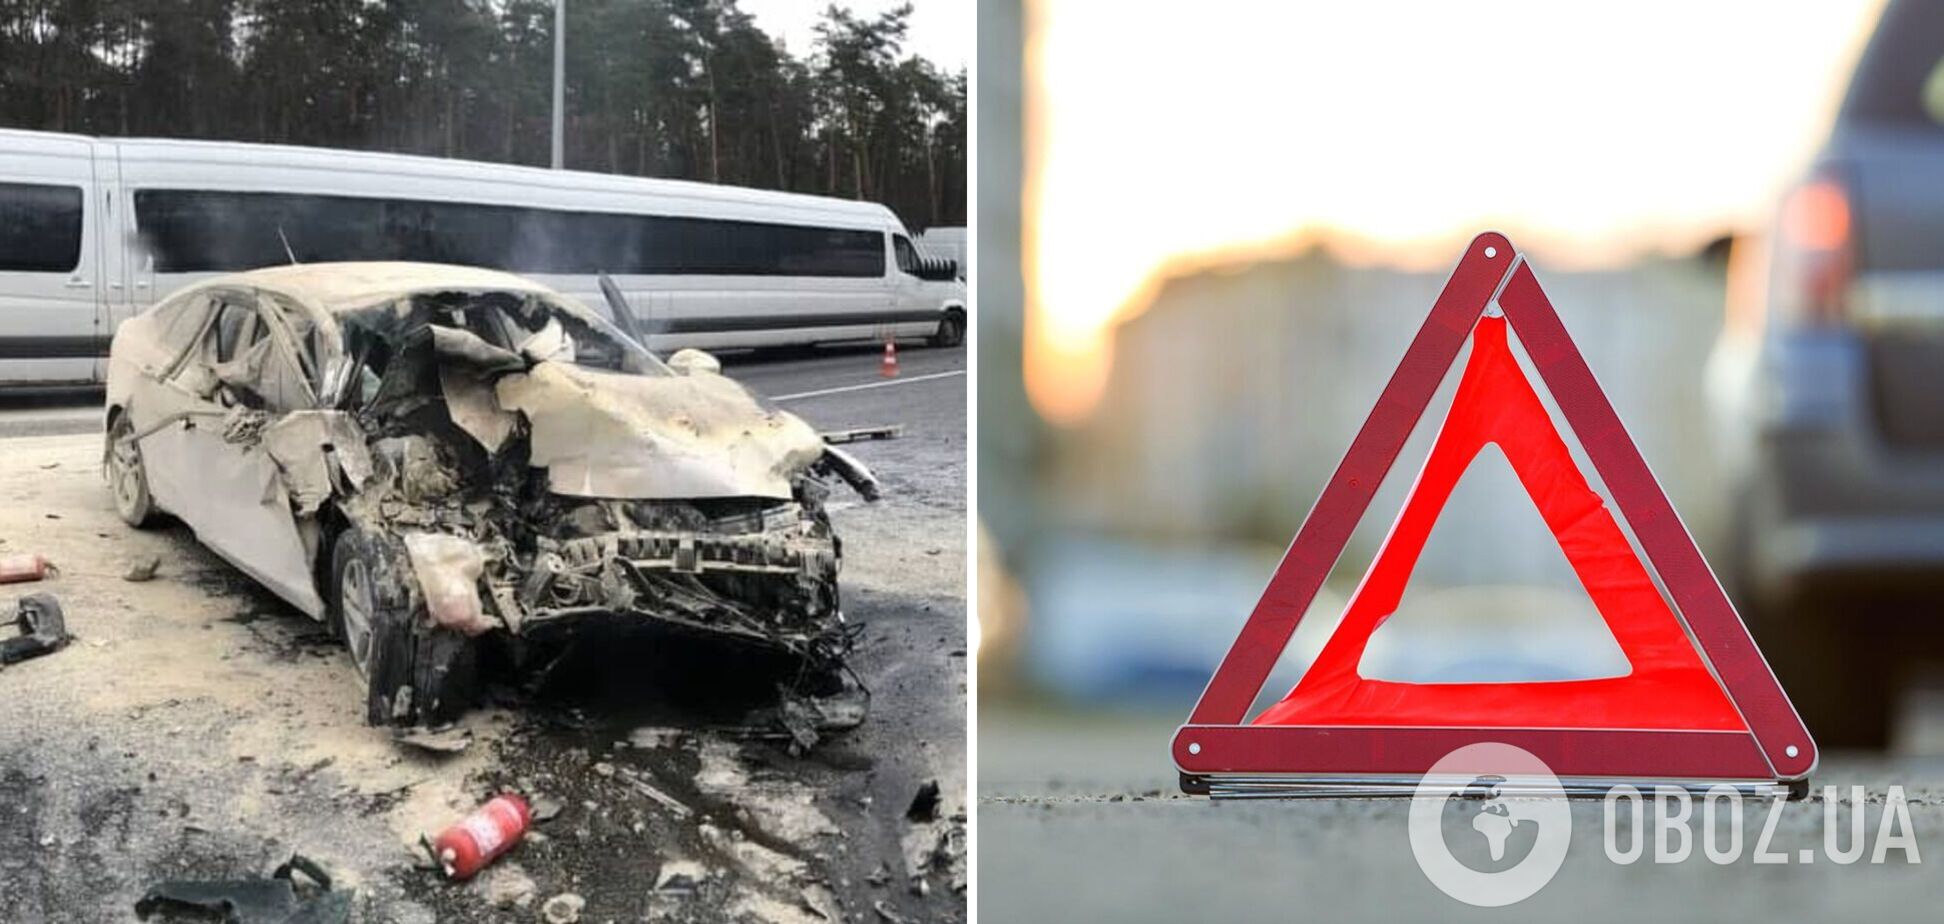 Авария произошла на Бориспольском шоссе